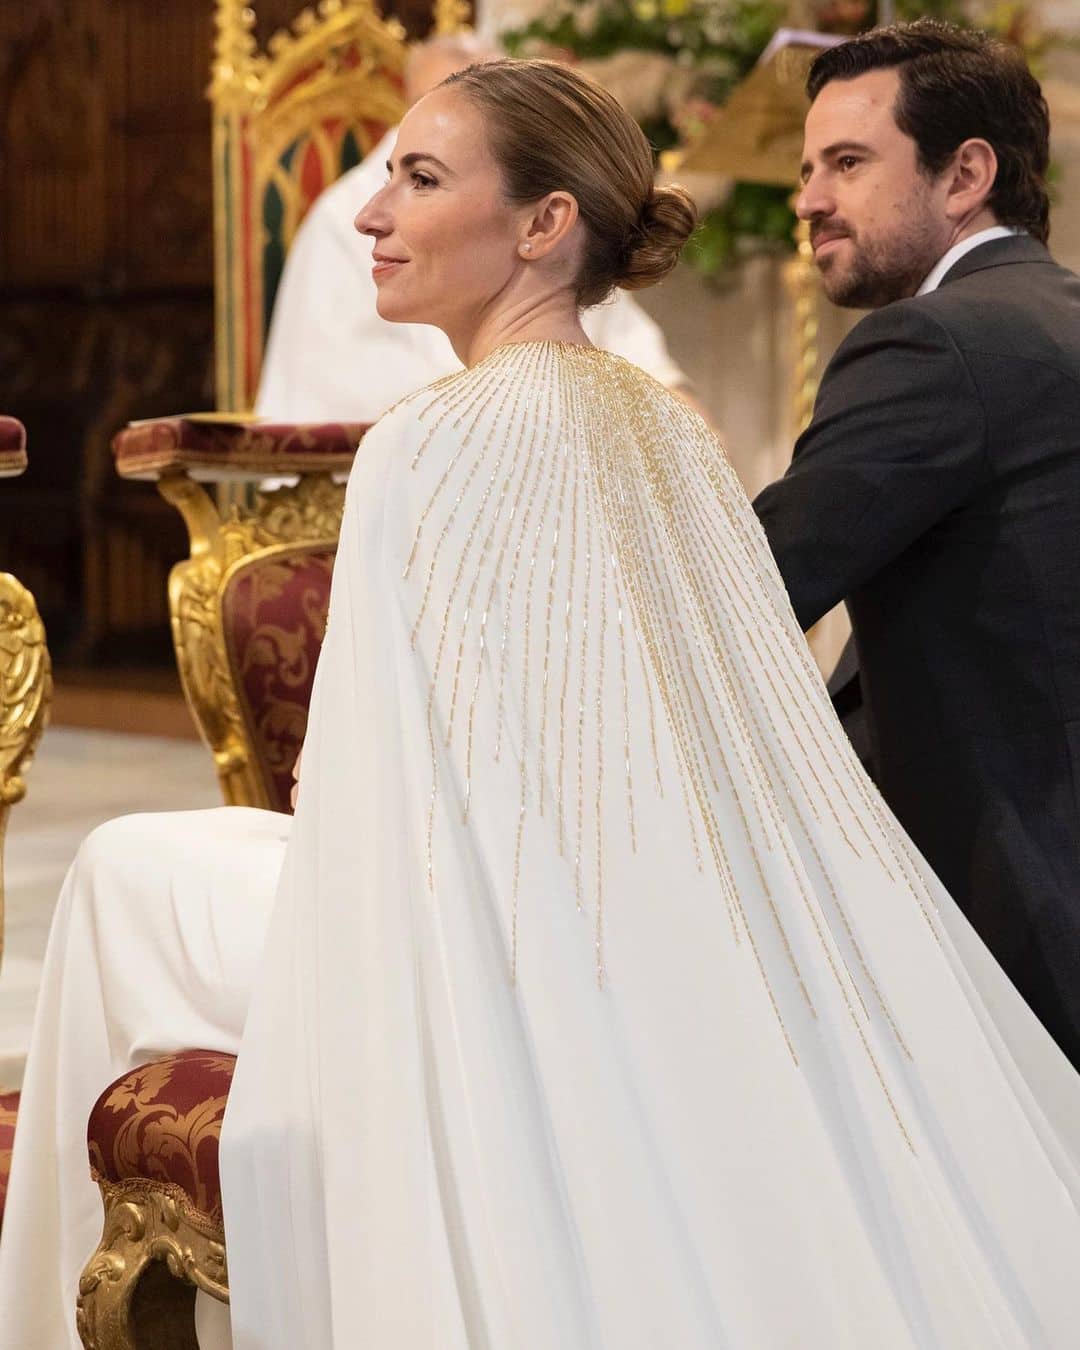 Vestido de novia diseñado por Jorge Acuña, destacado diseñador español y miembro de la ACME